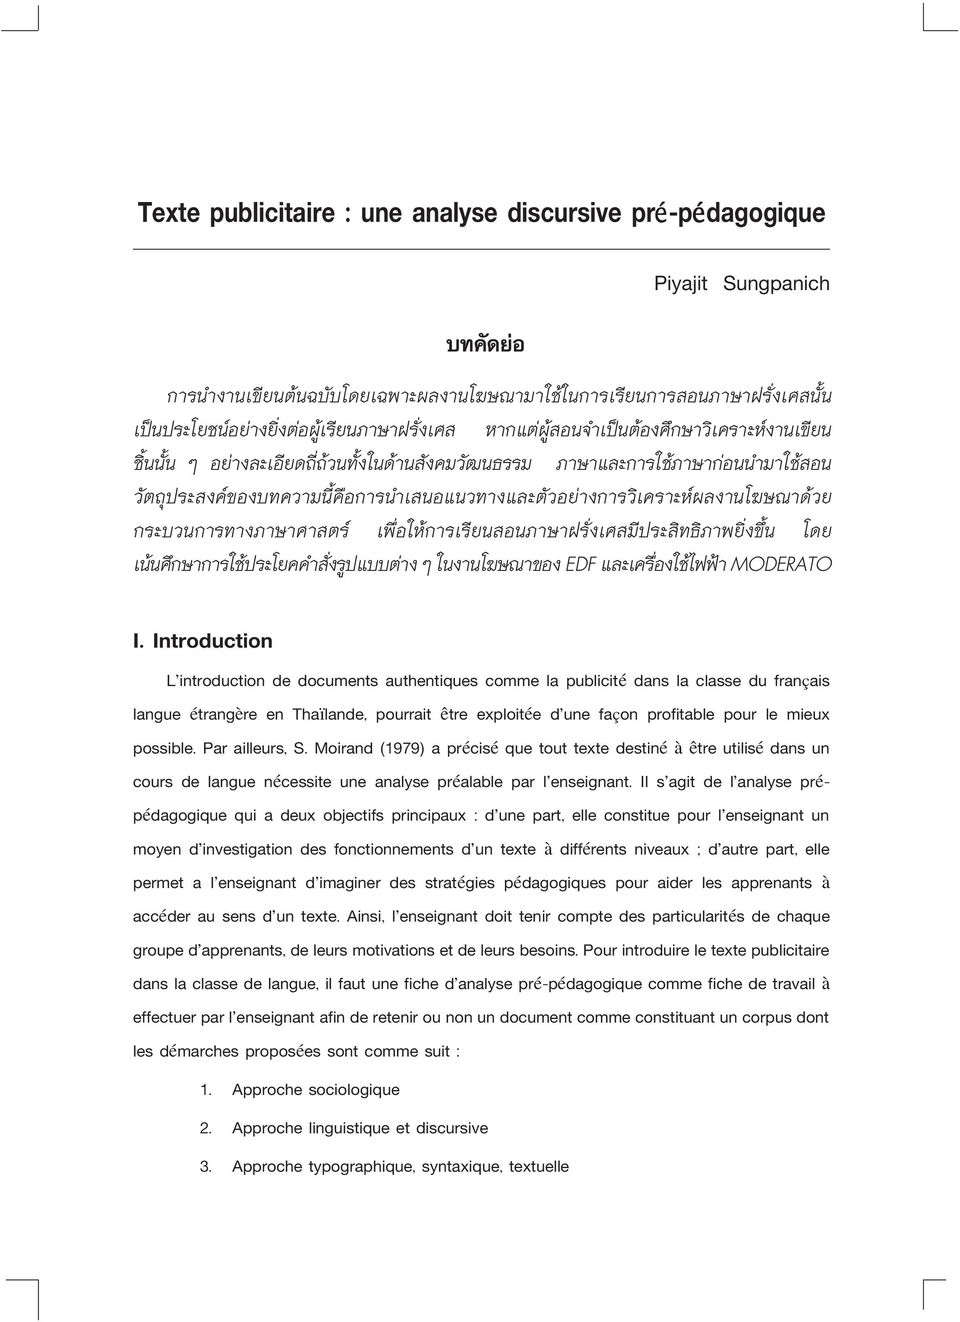 Introduction Lûintroduction de documents authentiques comme la publicité dans la classe du français langue étrangère en Thaïlande, pourrait être exploitée dûune façon profitable pour le mieux